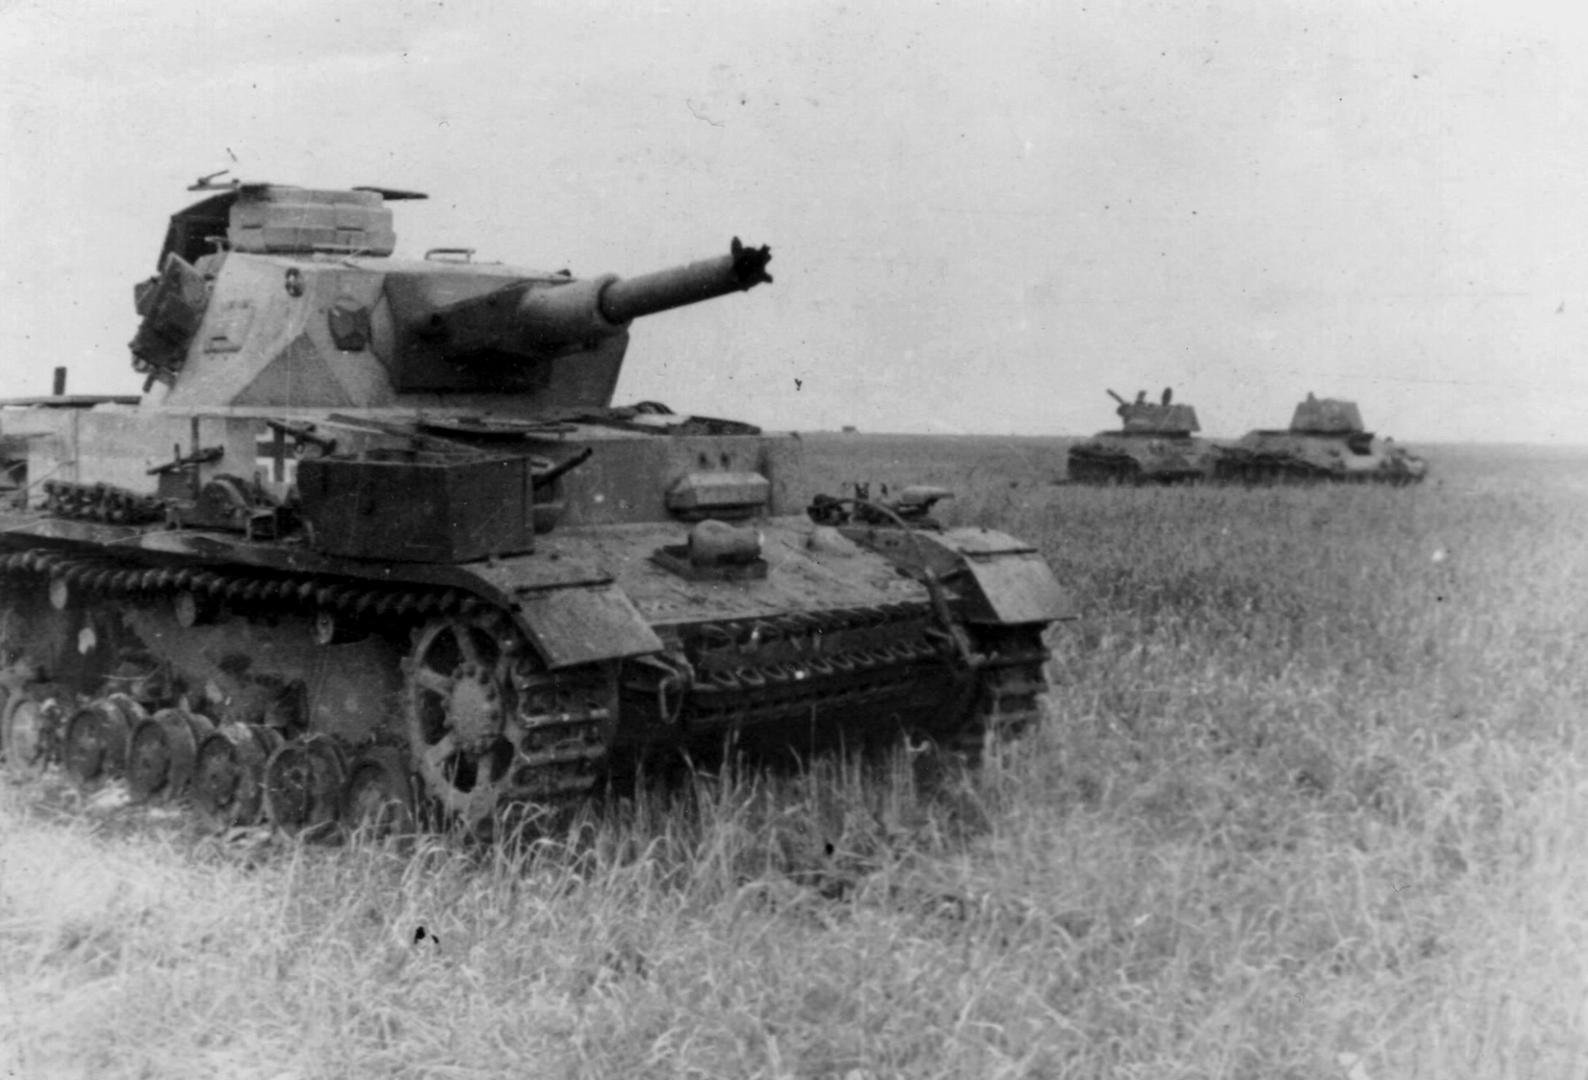 Немецкие танки второй мировой фото с названиями